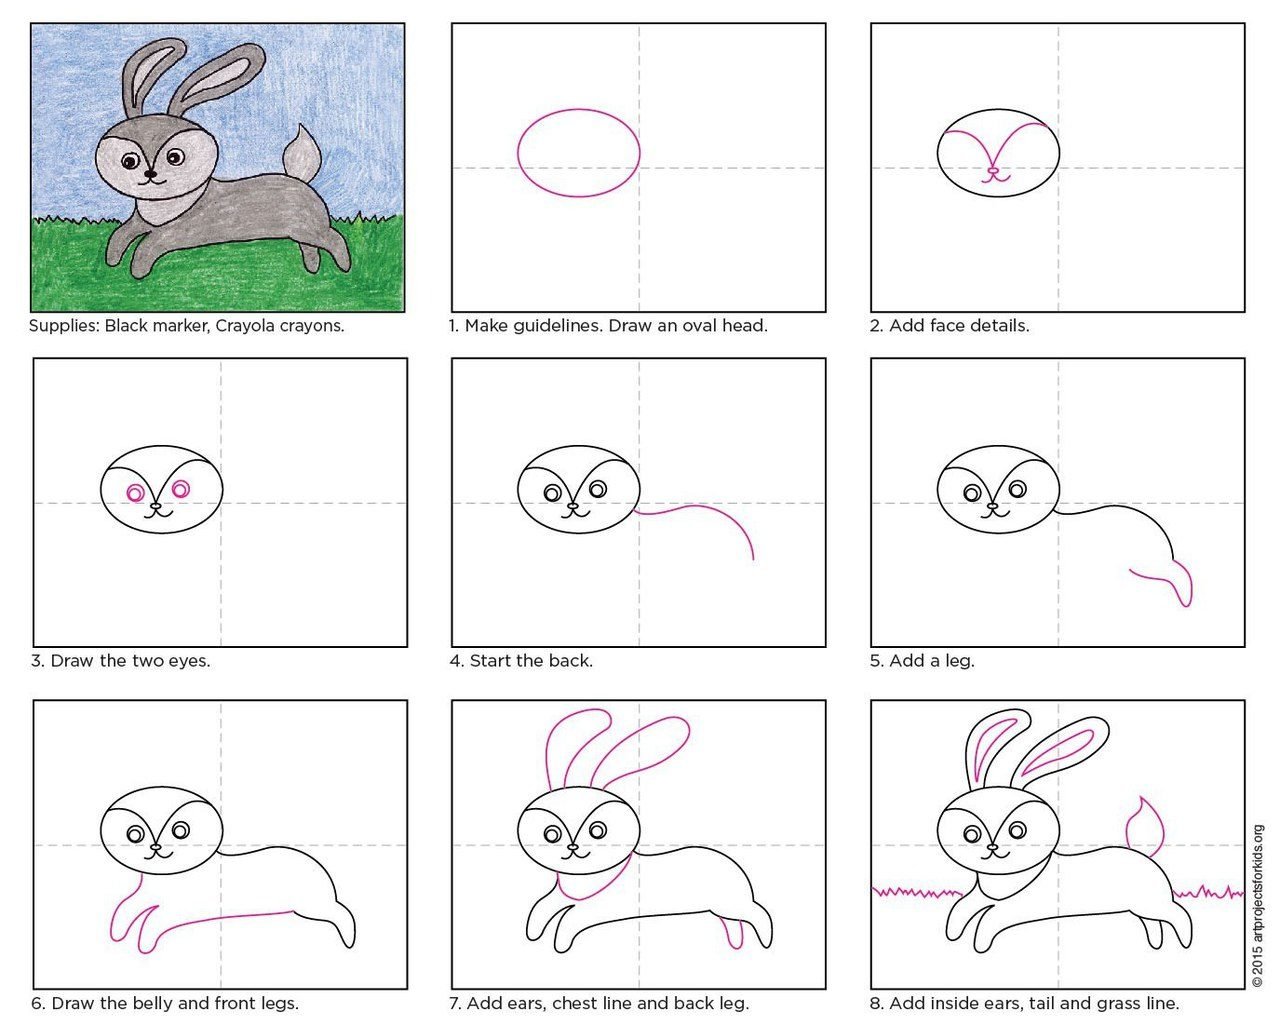 Как нарисовать кролика по схеме шаг за шагом